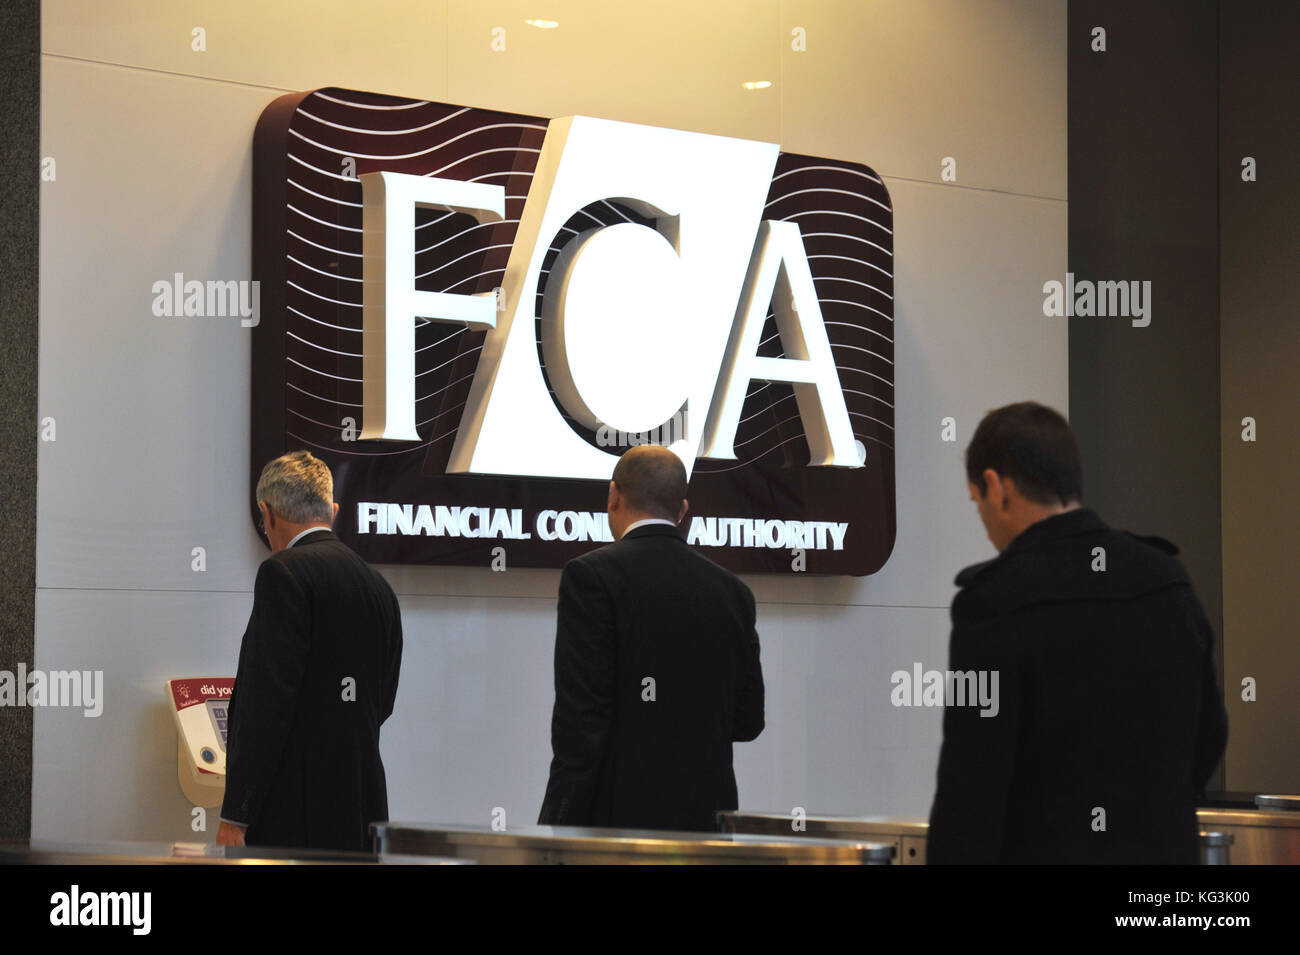 La conducta financiera competente [FCA] oficinas en Canary Wharf, Londres. Foto por Michael Walter/Troika Foto de stock